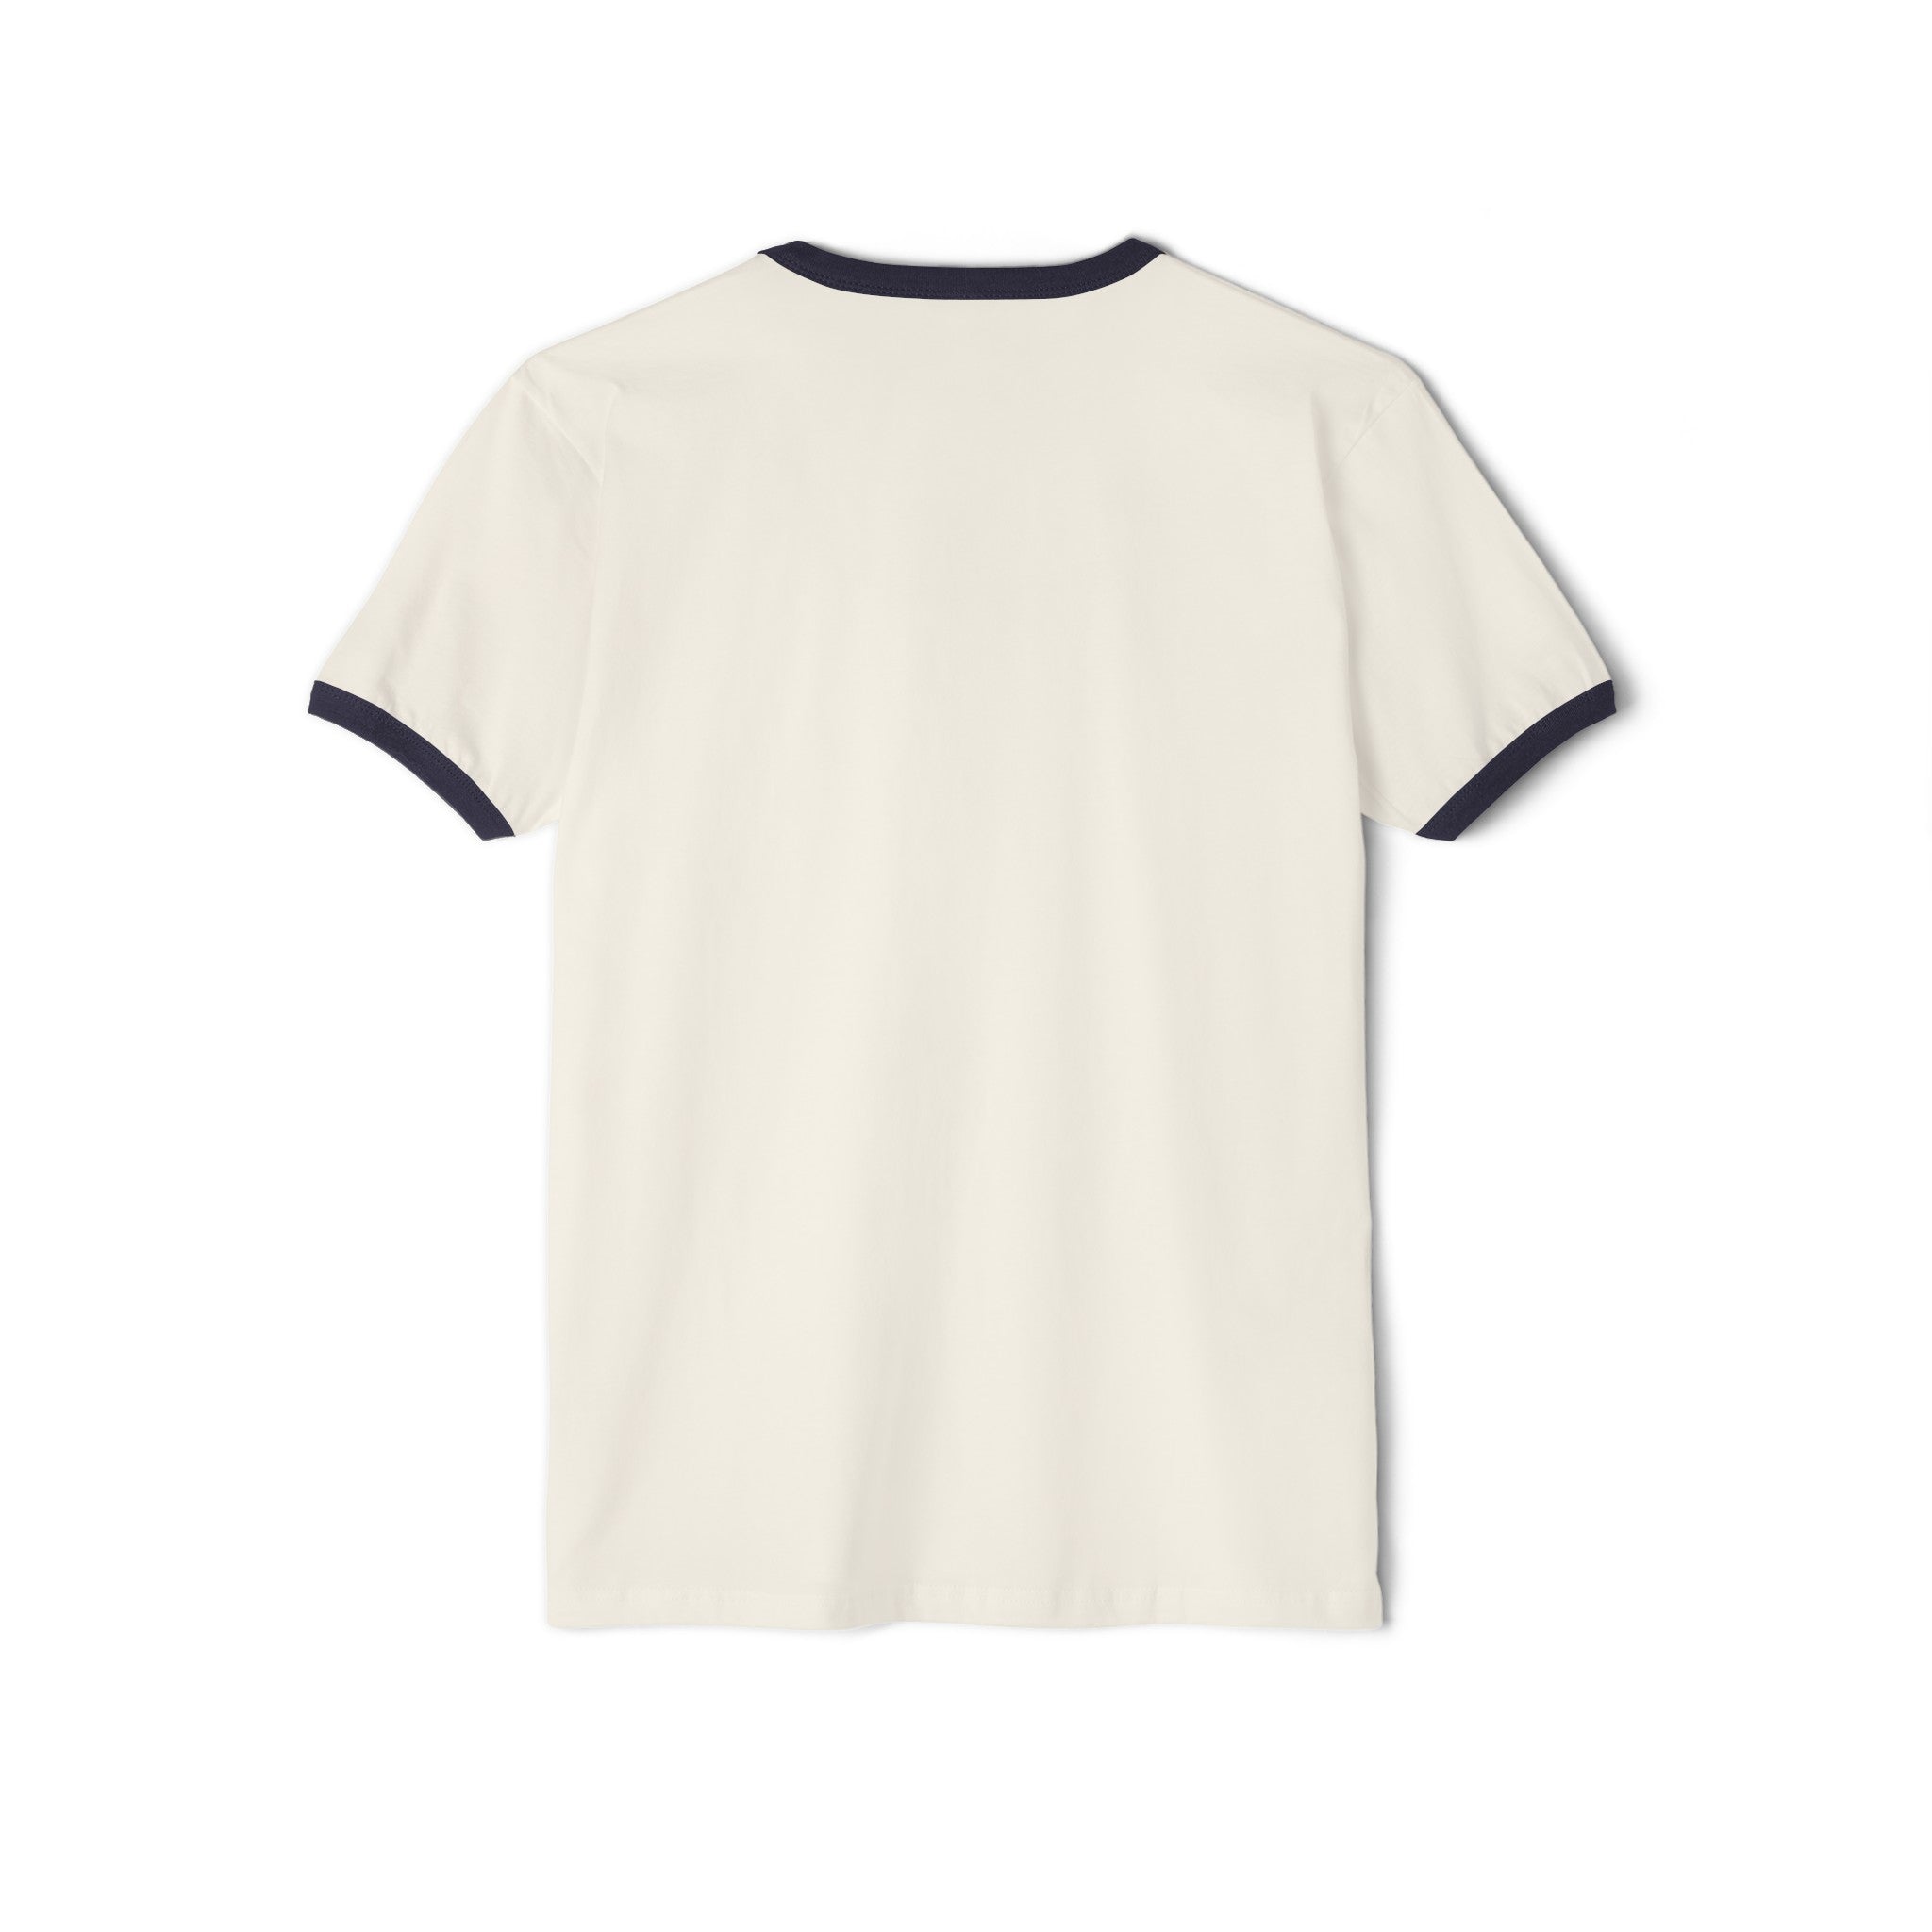 TOS Kirk Spacesuit Unisex Cotton Ringer T-Shirt